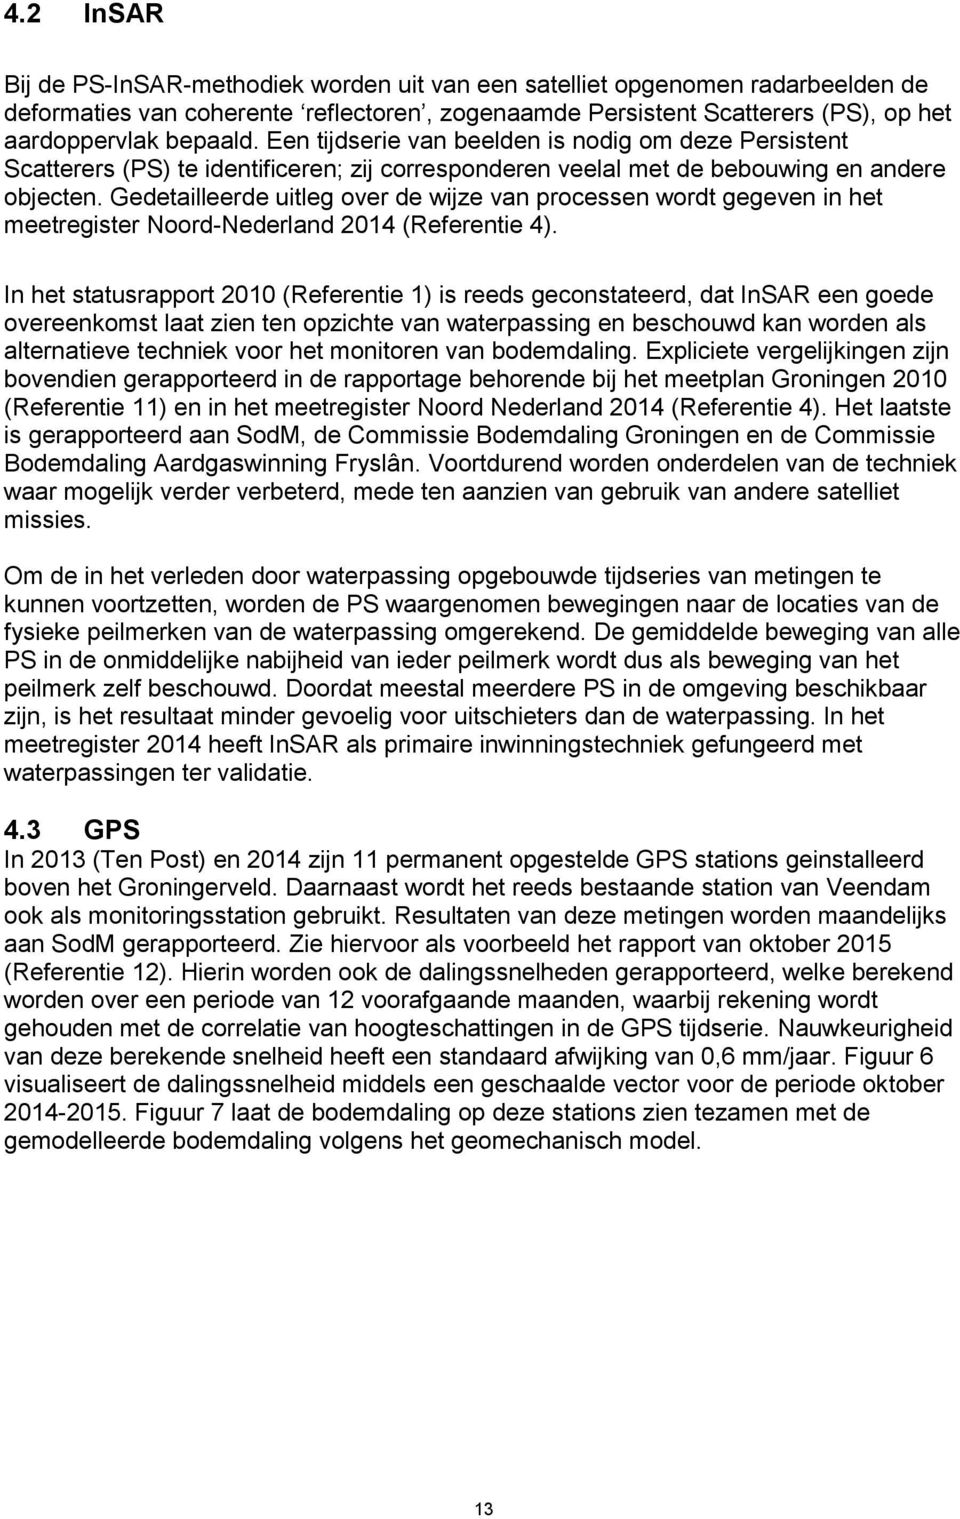 Gedetailleerde uitleg over de wijze van processen wordt gegeven in het meetregister Noord-Nederland 2014 (Referentie 4).